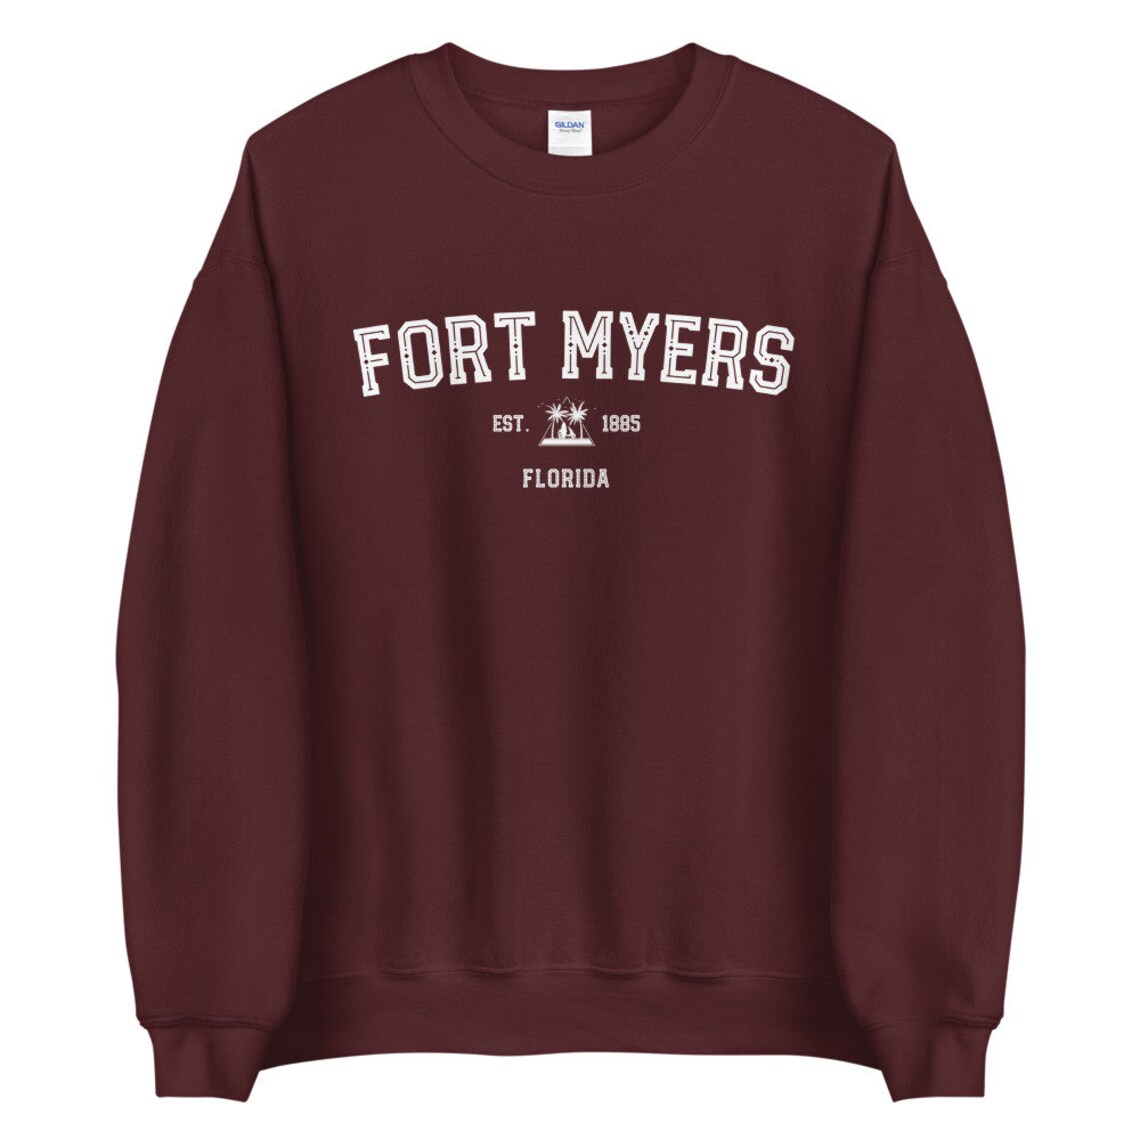 Fort Myers Crewneck Sweatshirt Fort Myers Sweatshirt Fort | Etsy